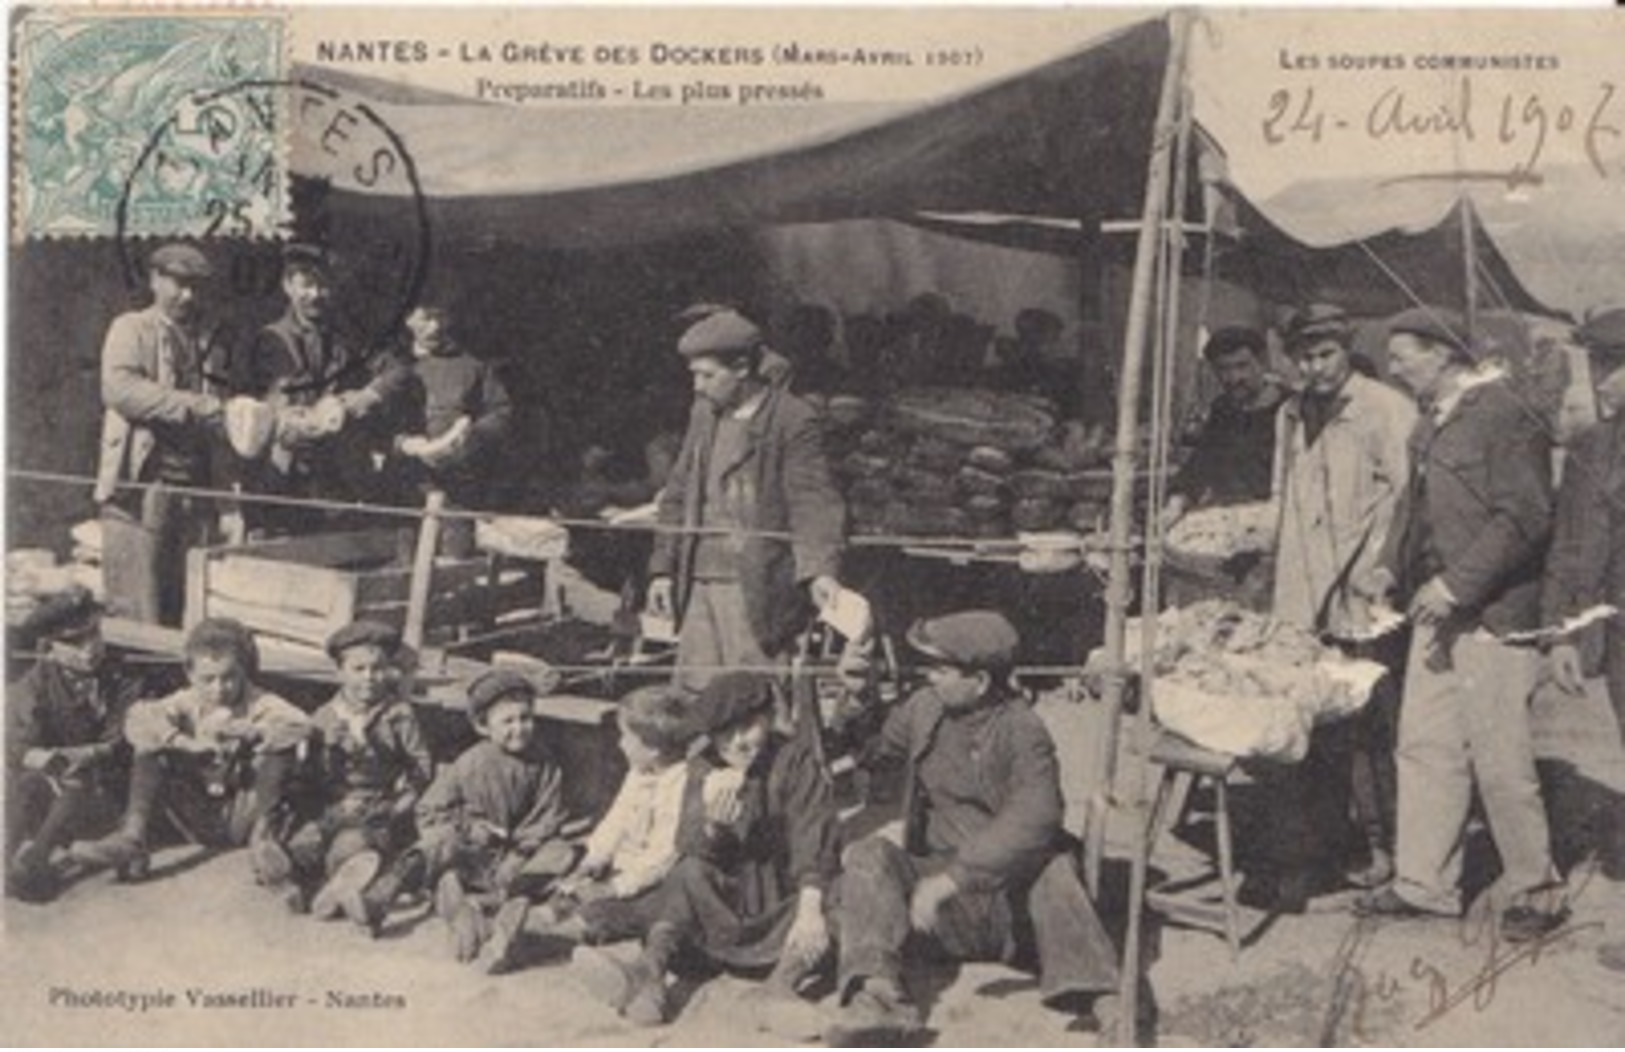 44 - CPA NANTES - La Grève Des Dockers (Mars-Avril 1907) - Préparatifs - Les Plus Pressés -Très Belle Animation - Grèves